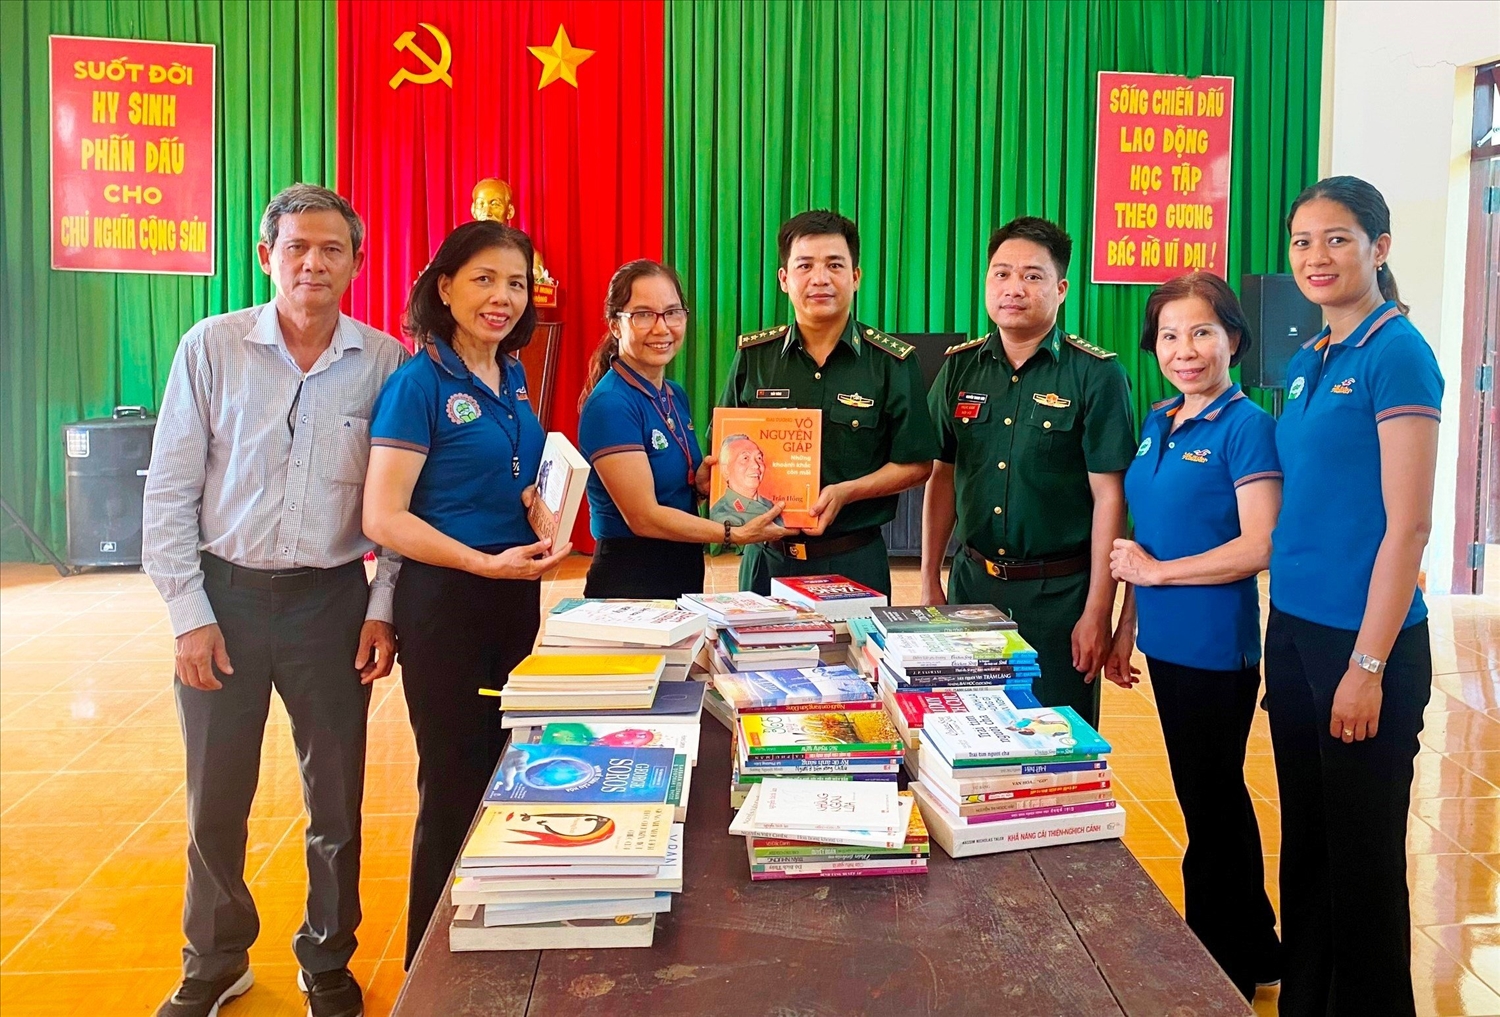 Đại diện các đơn vị trao sách tặng Đồn Biên phòng Cửa khẩu Đắk Ruê